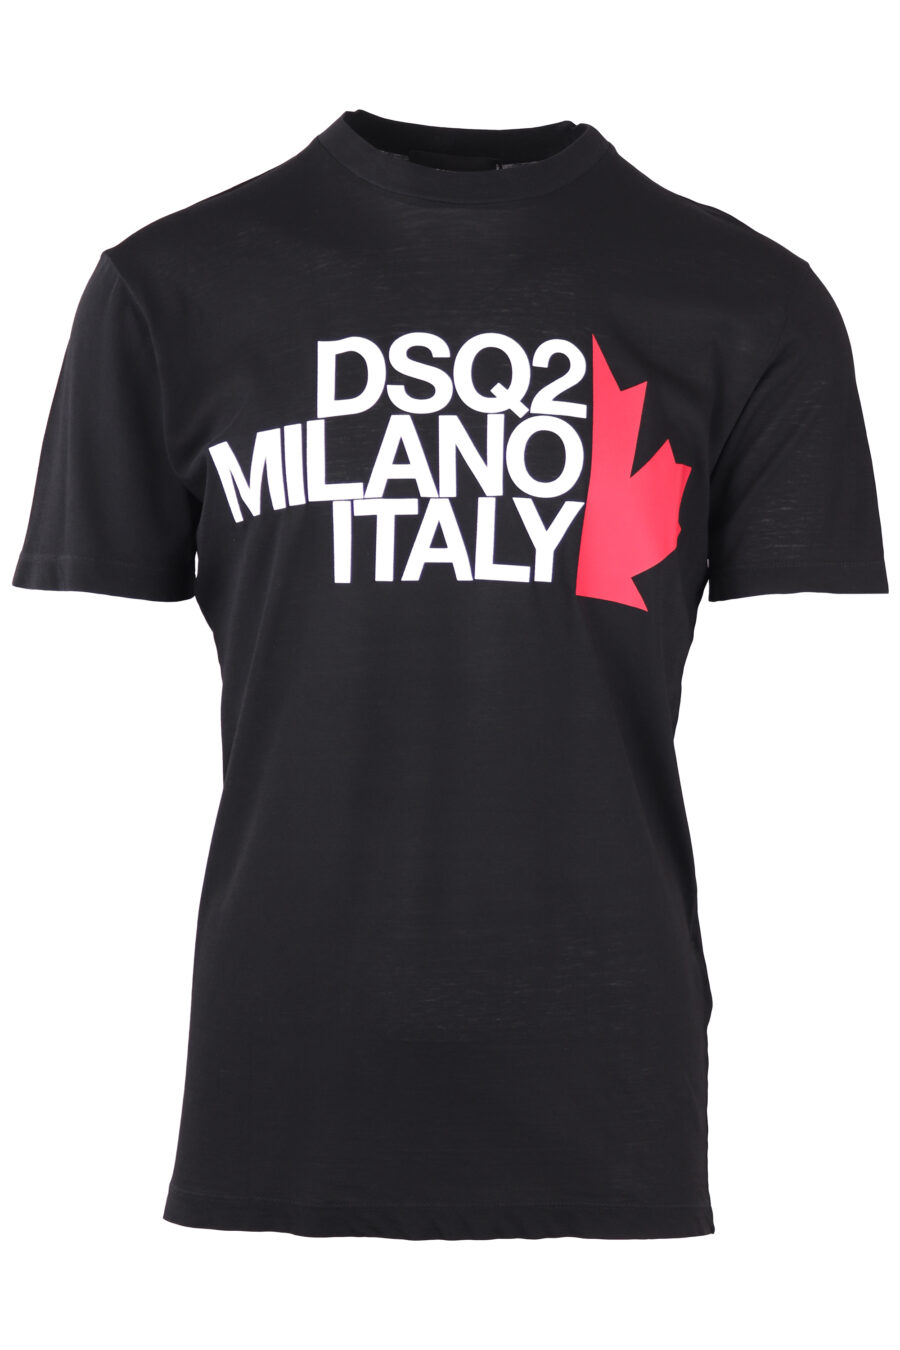 Camiseta negra con maxilogo "milano italy" - IMG 7716